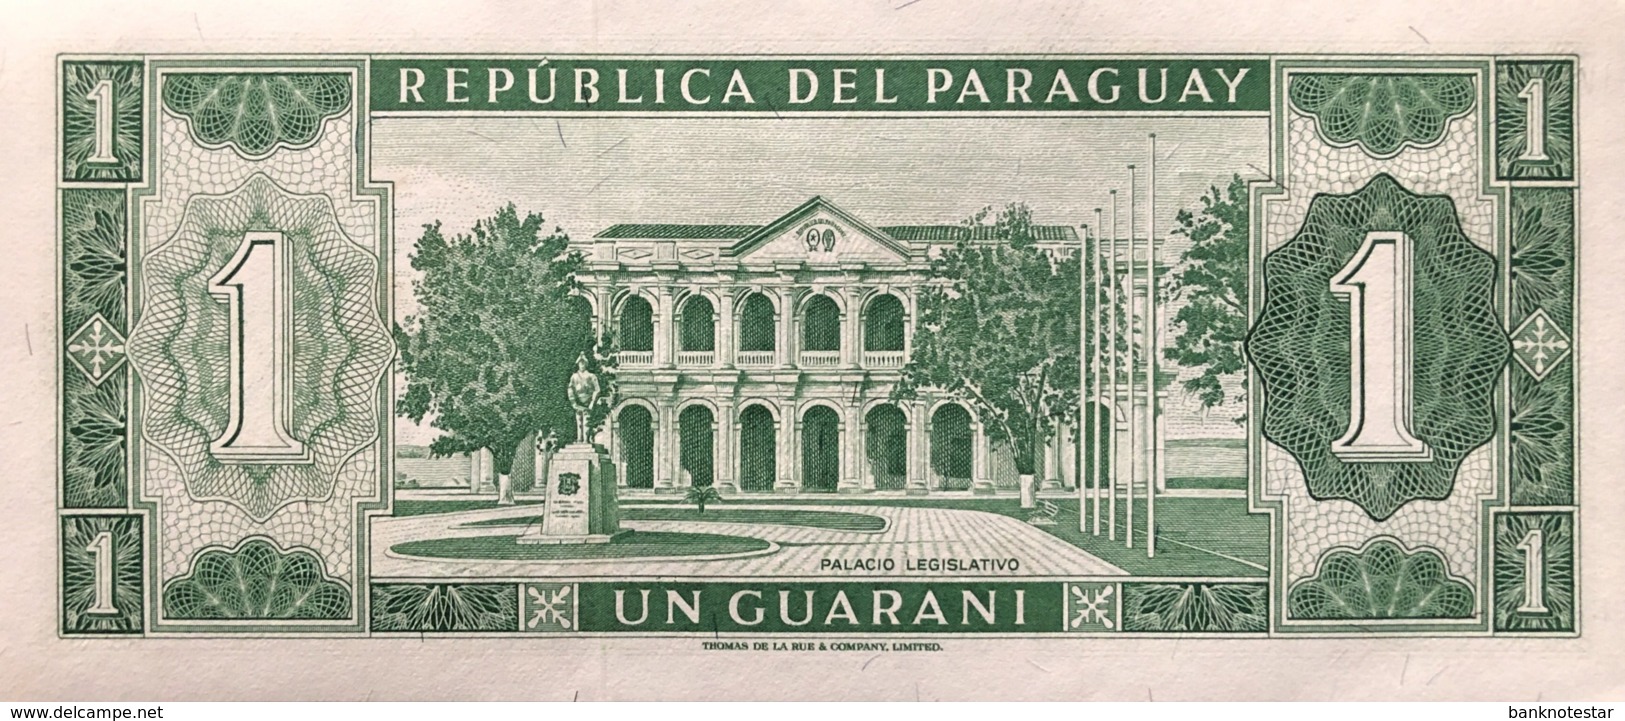 Paraguay 1 Guarani, P-193b (L.1952) - UNC - Paraguay